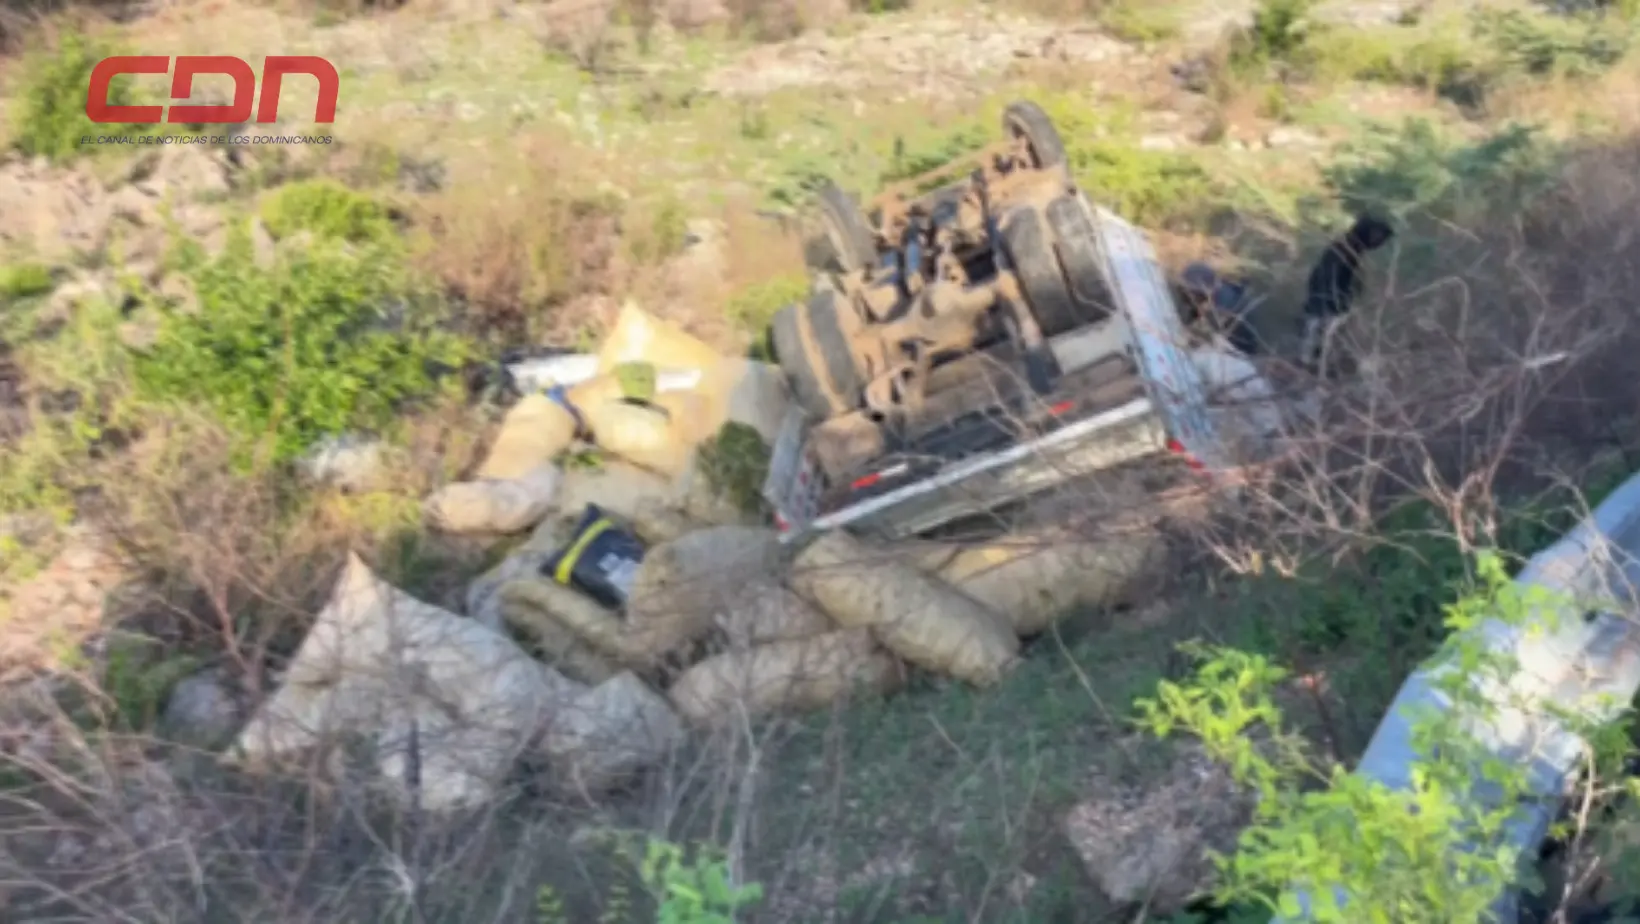  Uno de los haitianos digo que el chofer maniobró el camión de forma inadecuada.